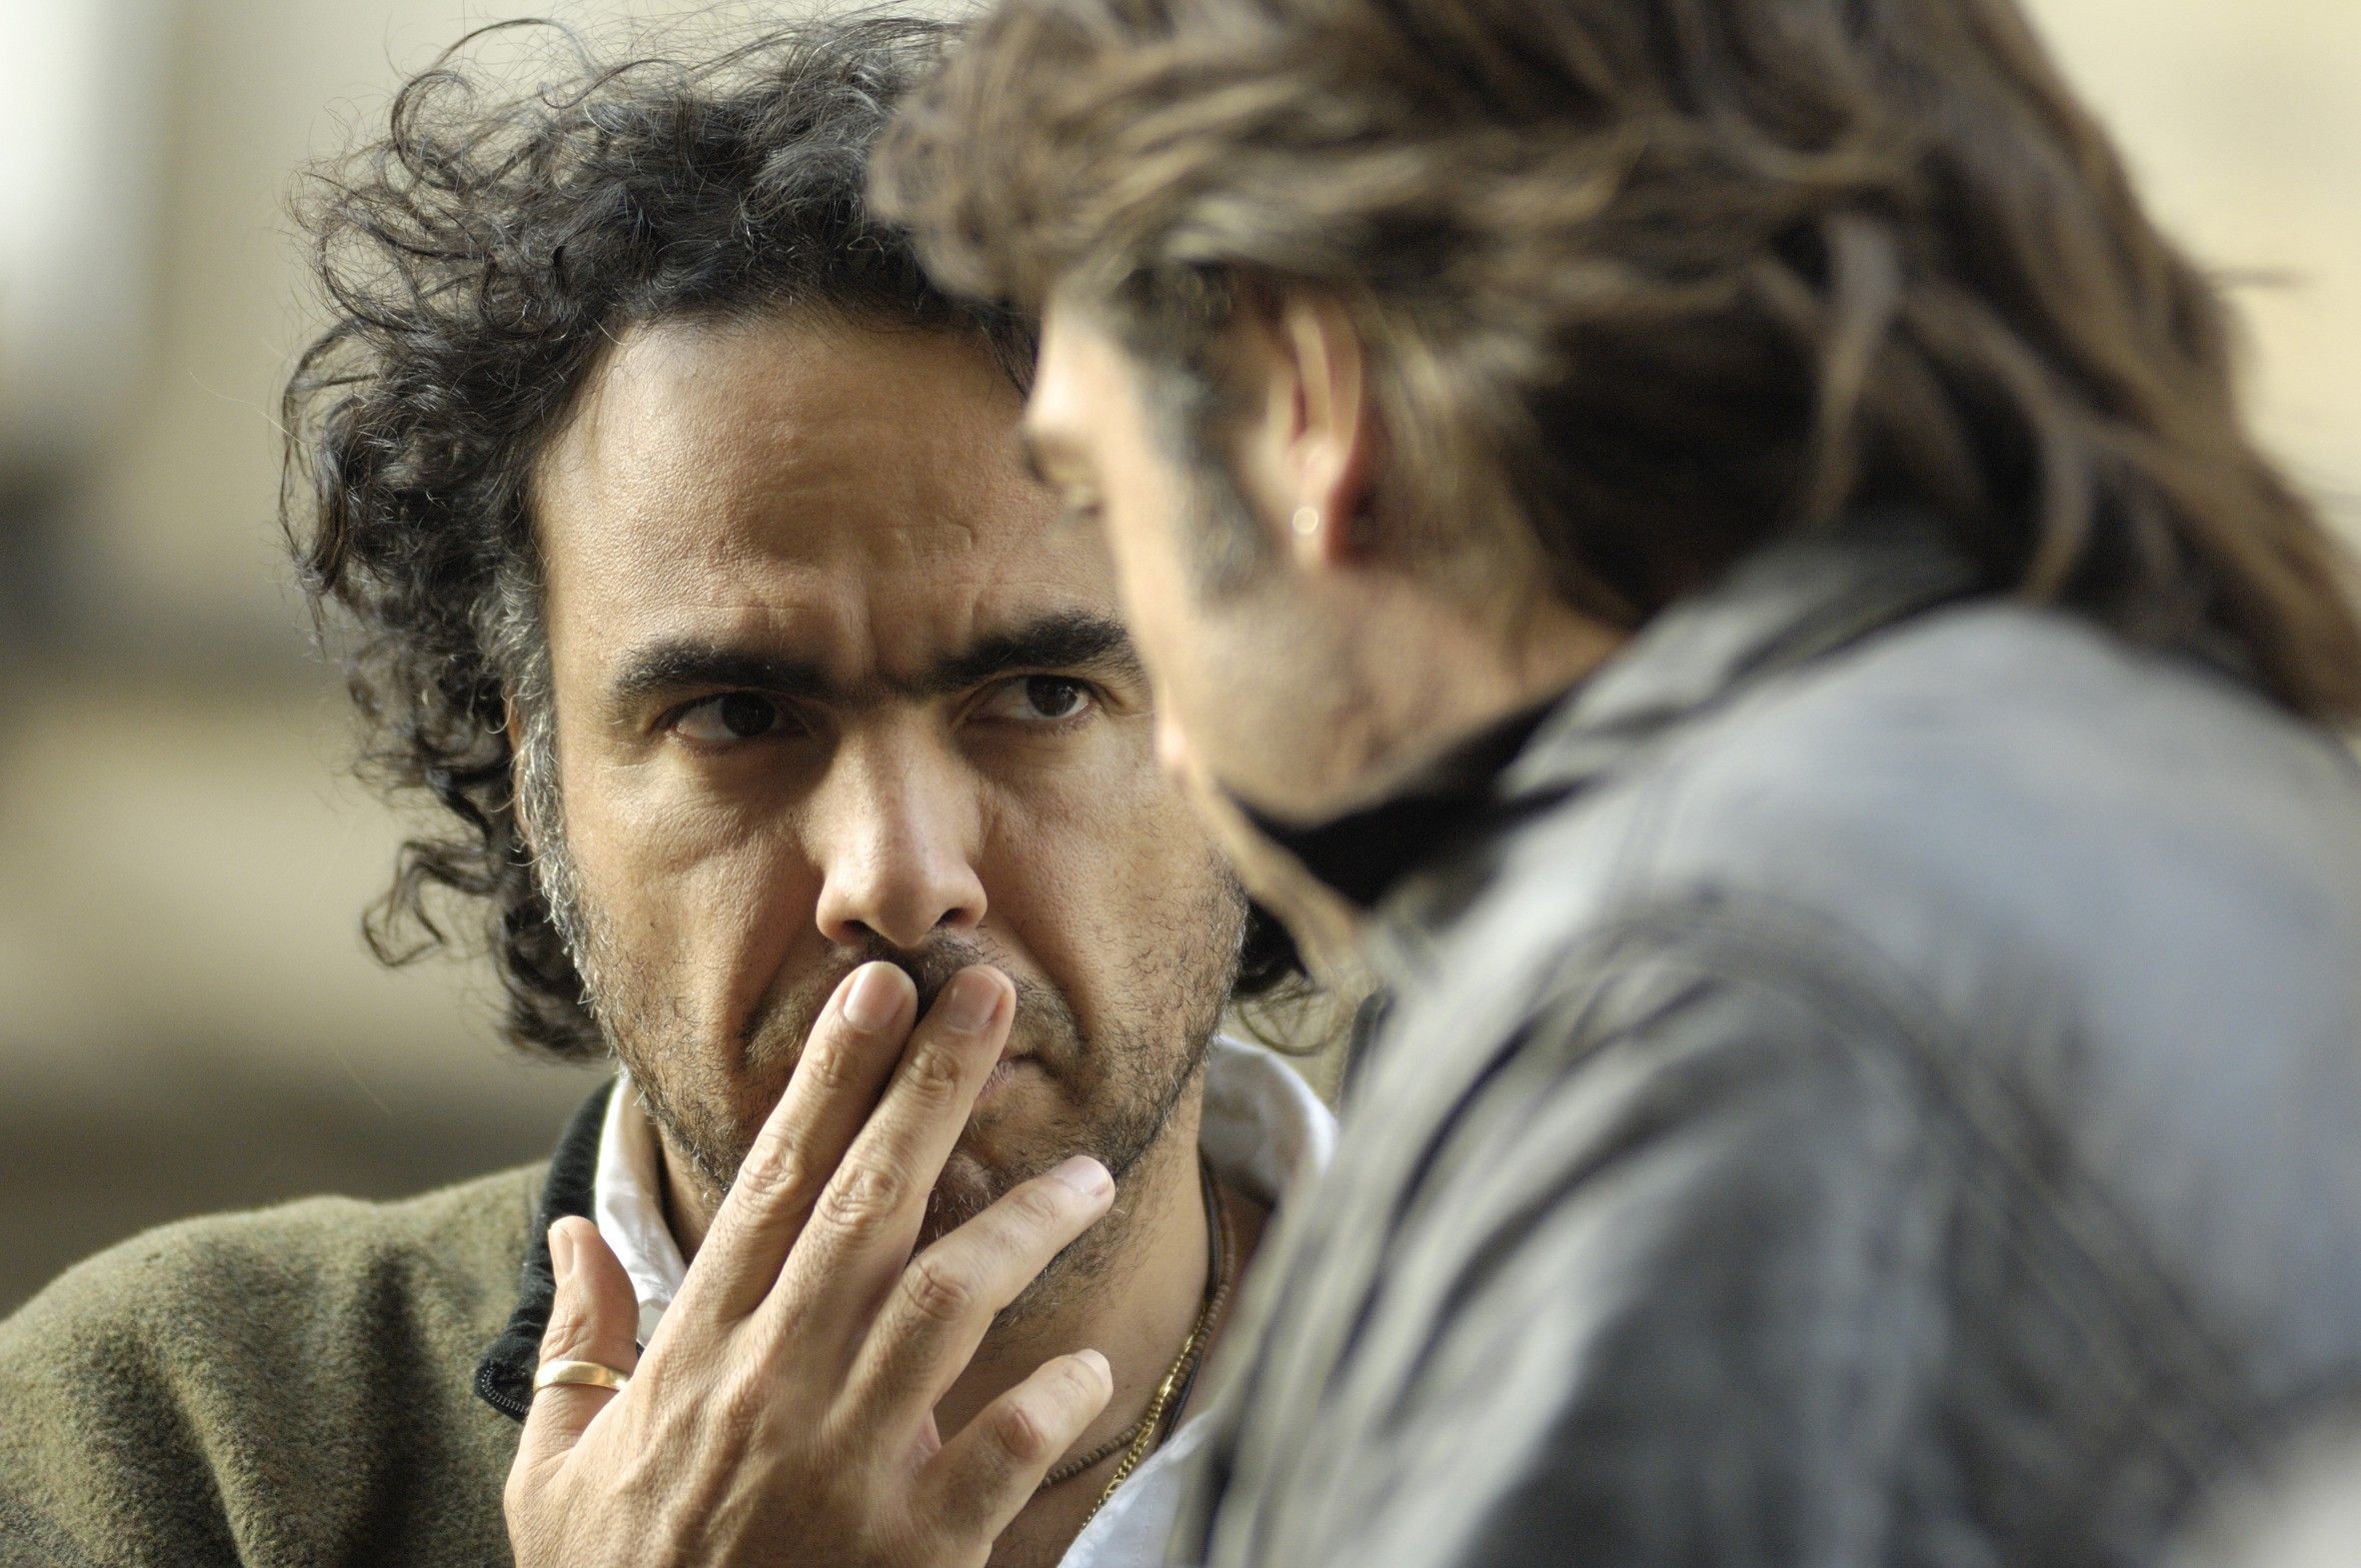 Алехандро Гонсалес Иньярриту и Хавьер Бардем на съёмках драмы Бьютифул, 2010